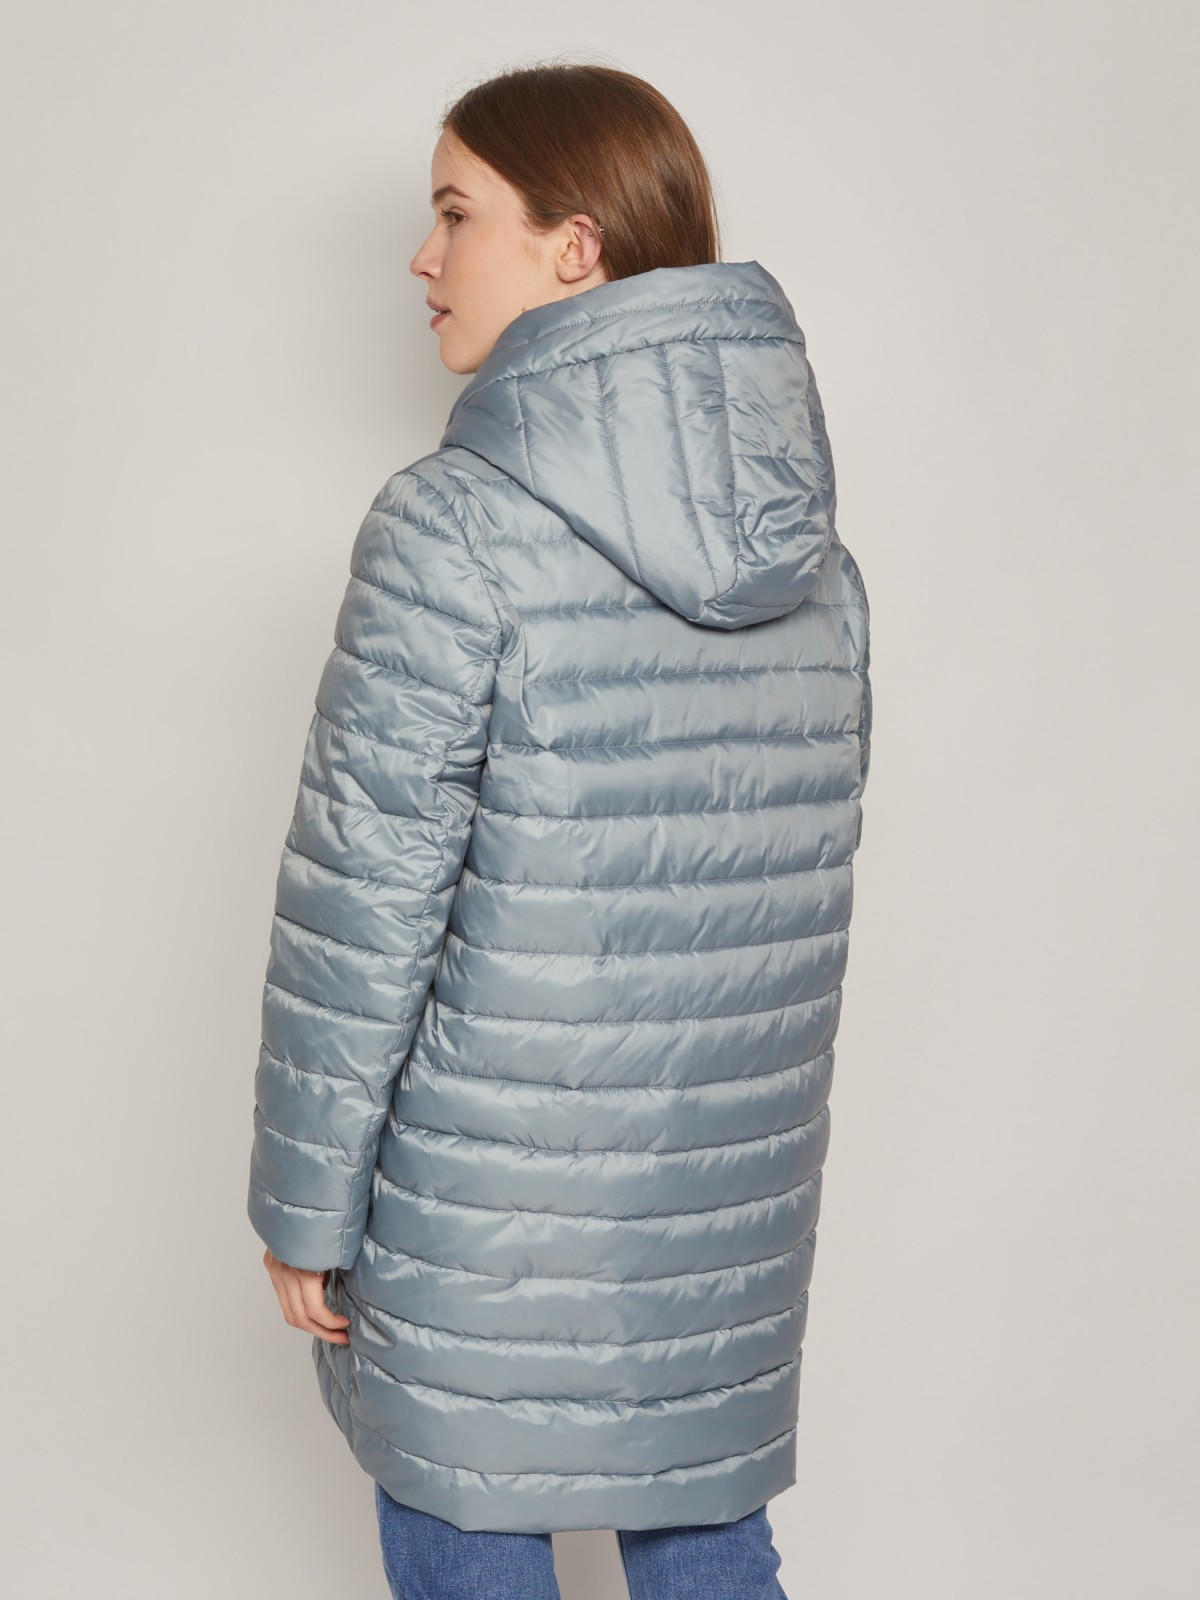 Стёганая куртка с диагональной застёжкой zolla 02212522J034, цвет мятный, размер S - фото 5